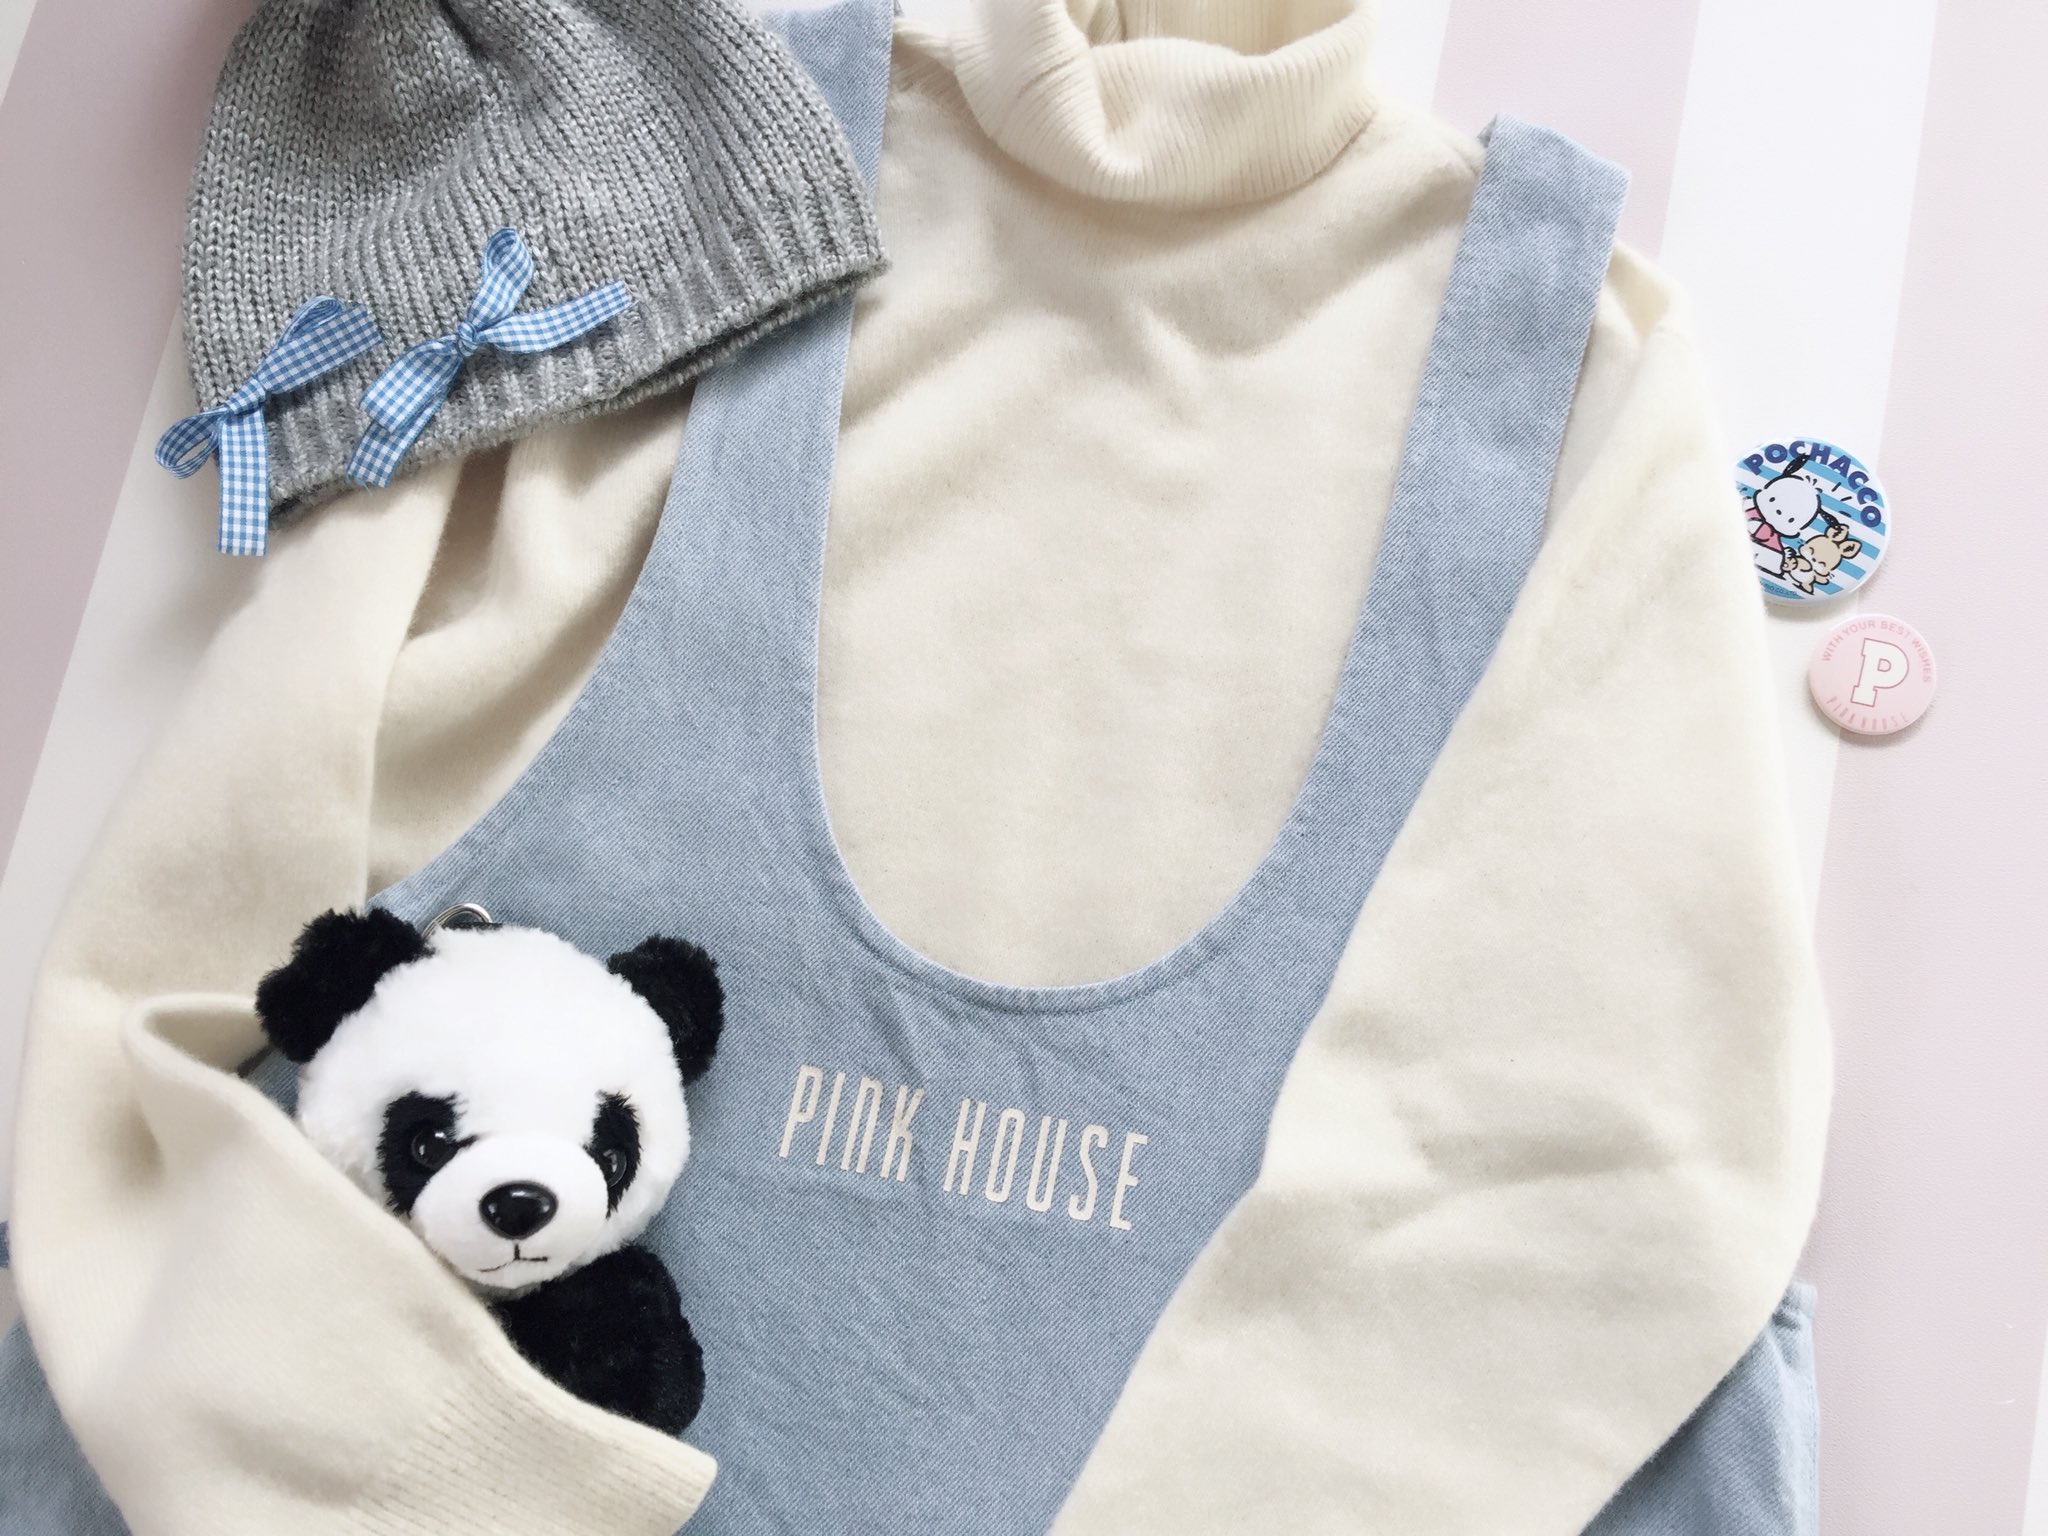 古着屋マッシュ on Twitter: "🍬 PINK HOUSE みずいろジャンパースカート L シンプルデザインにピンクハウスロゴ